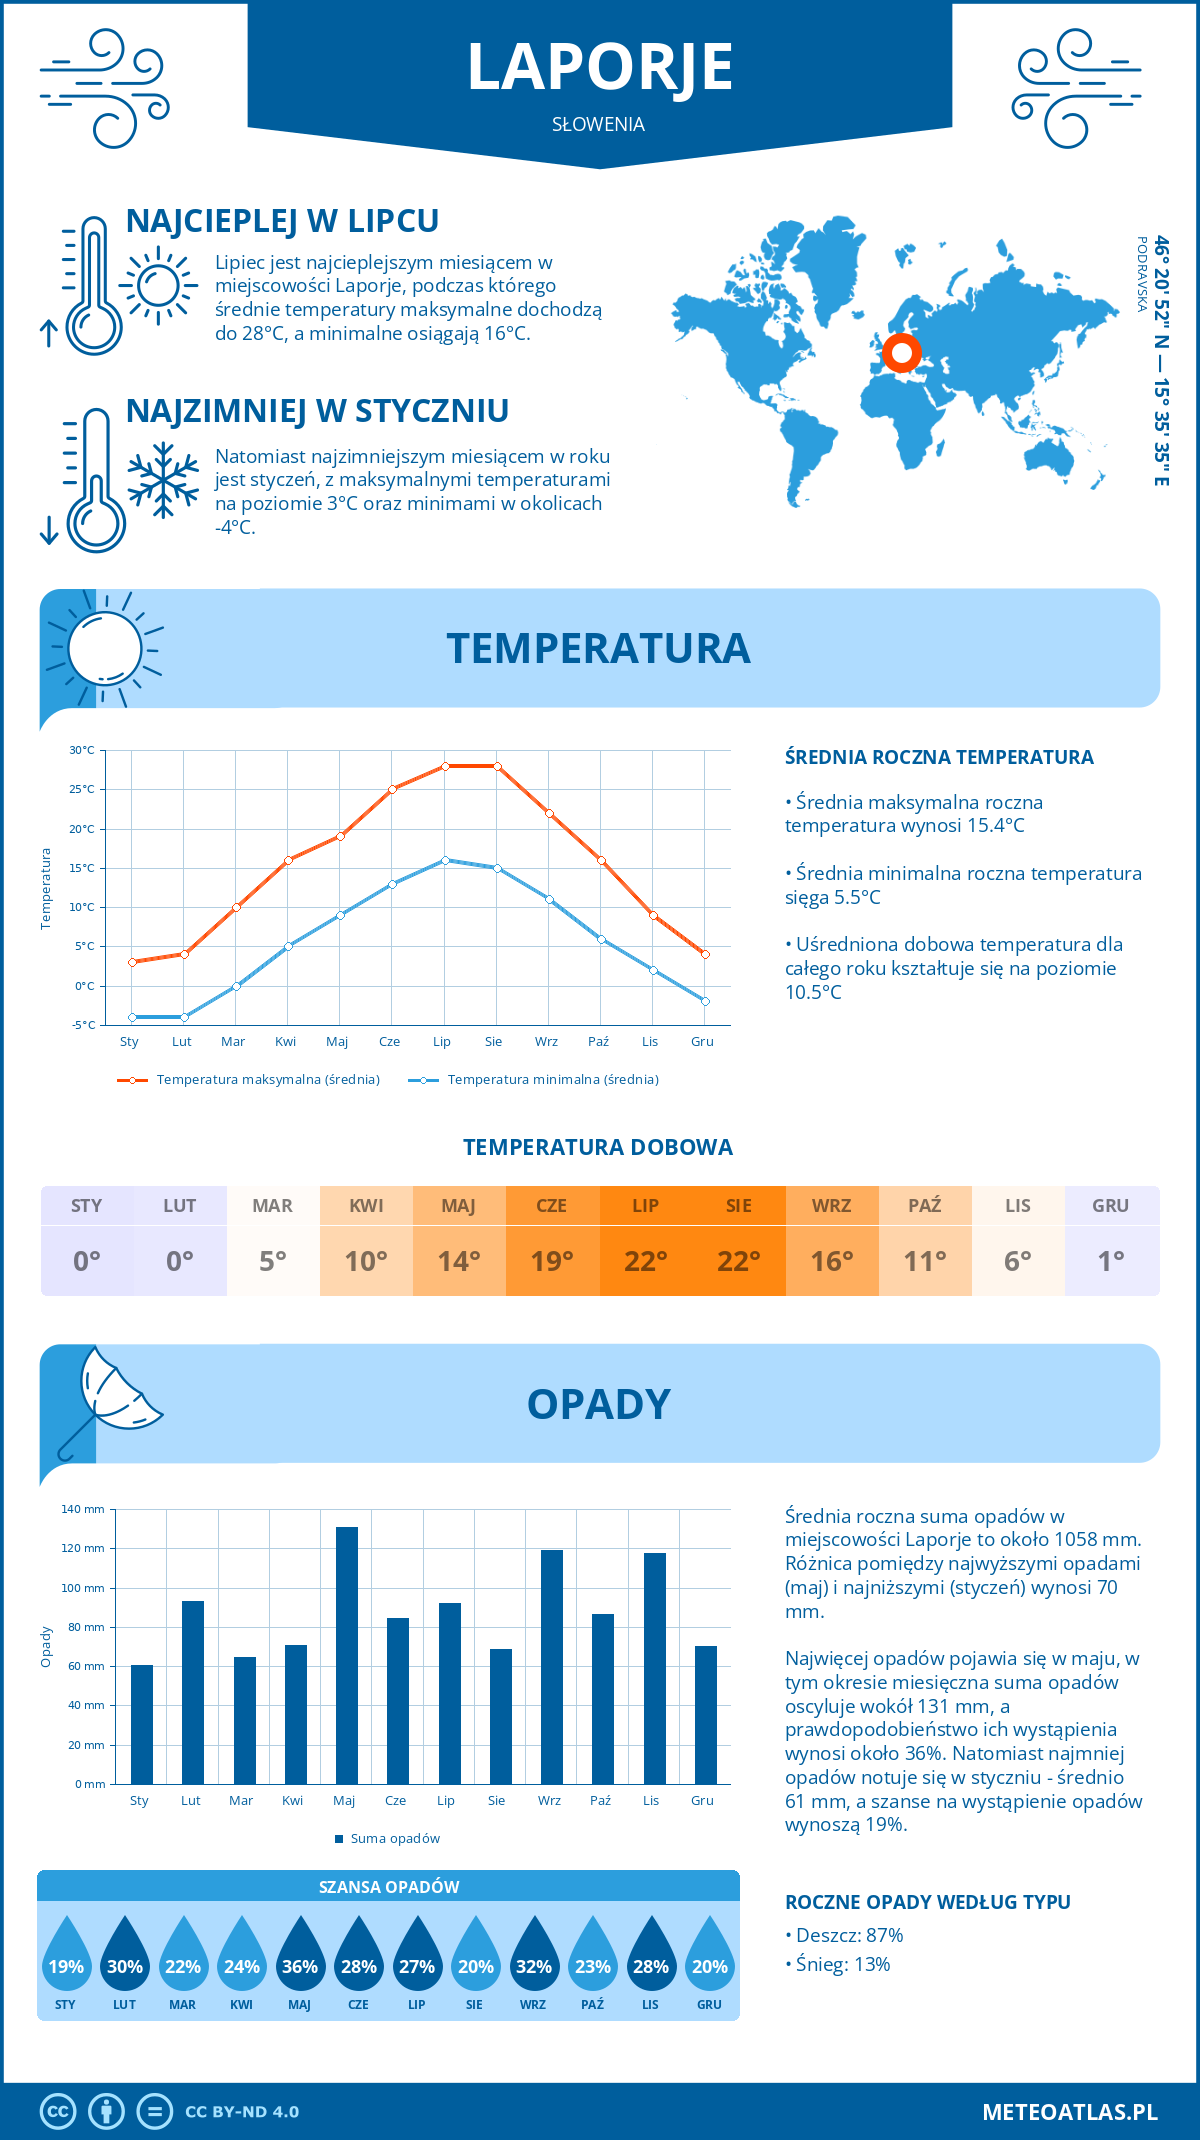 Pogoda Laporje (Słowenia). Temperatura oraz opady.